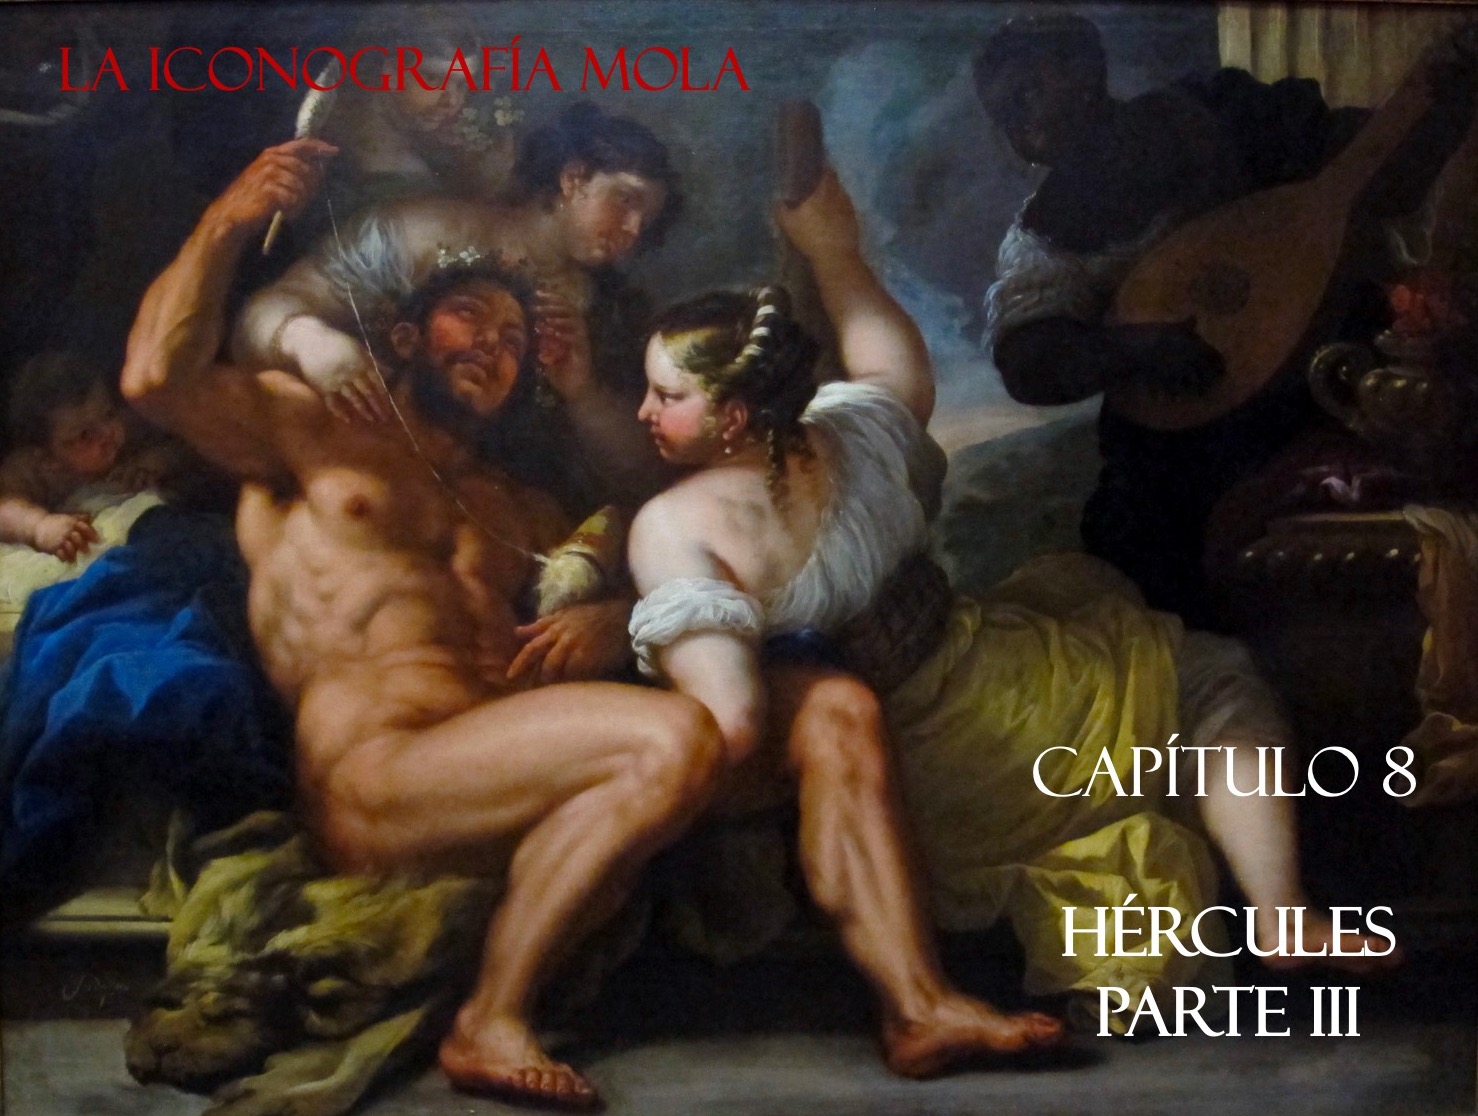 La Iconografía Mola- Cap. 8: “Hércules” Parte III